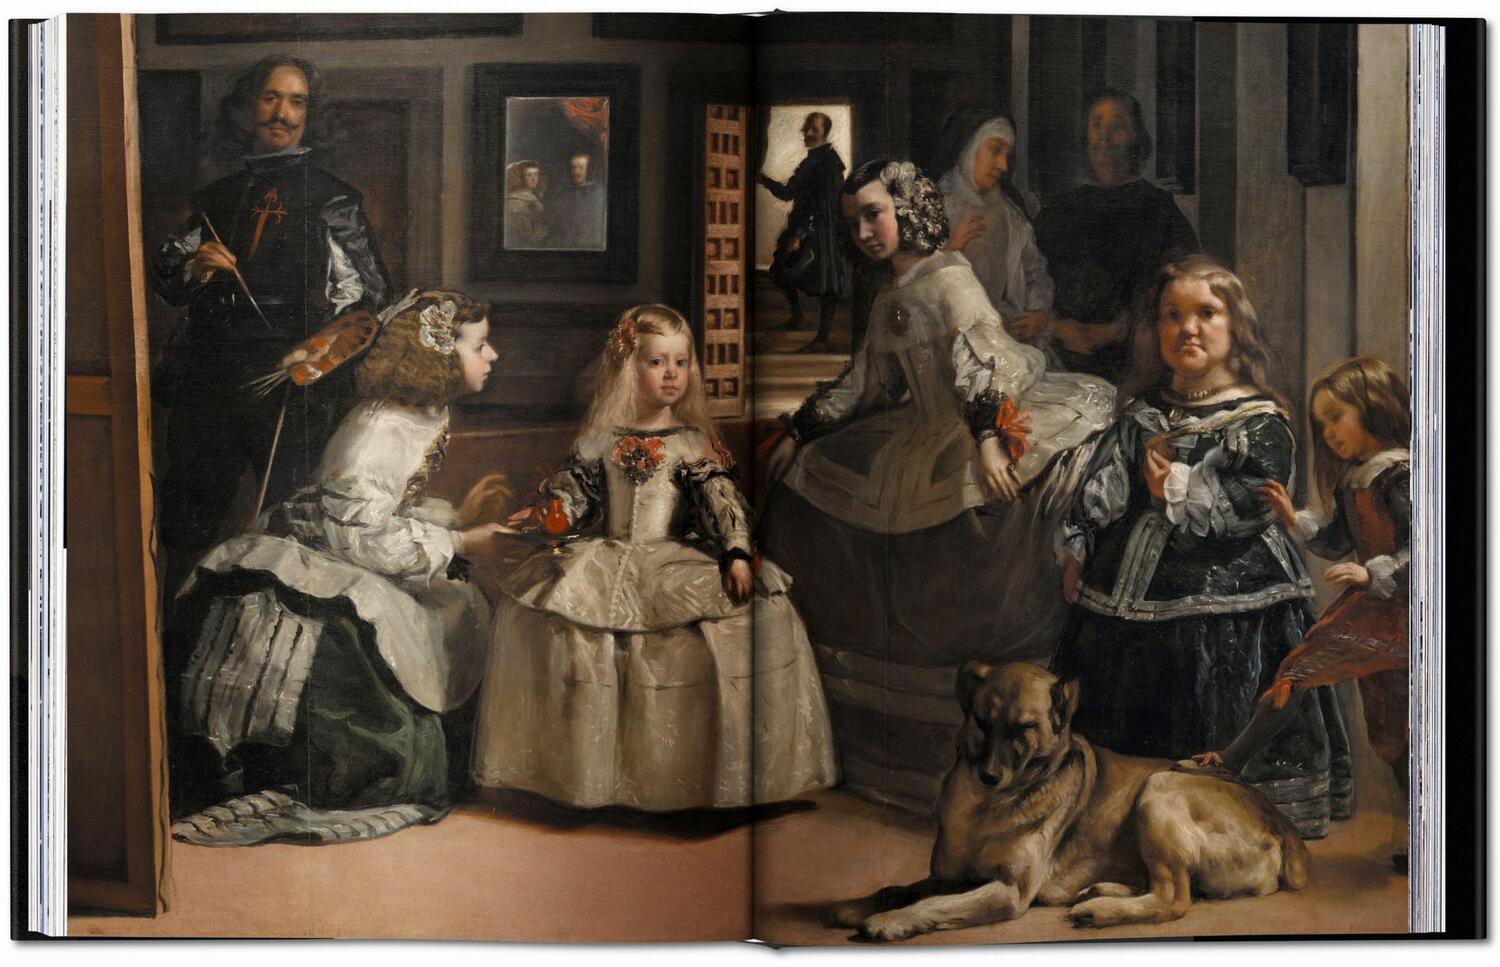 Bild: 9783836581752 | Velázquez. Das vollständige Werk | José López-Rey (u. a.) | Buch